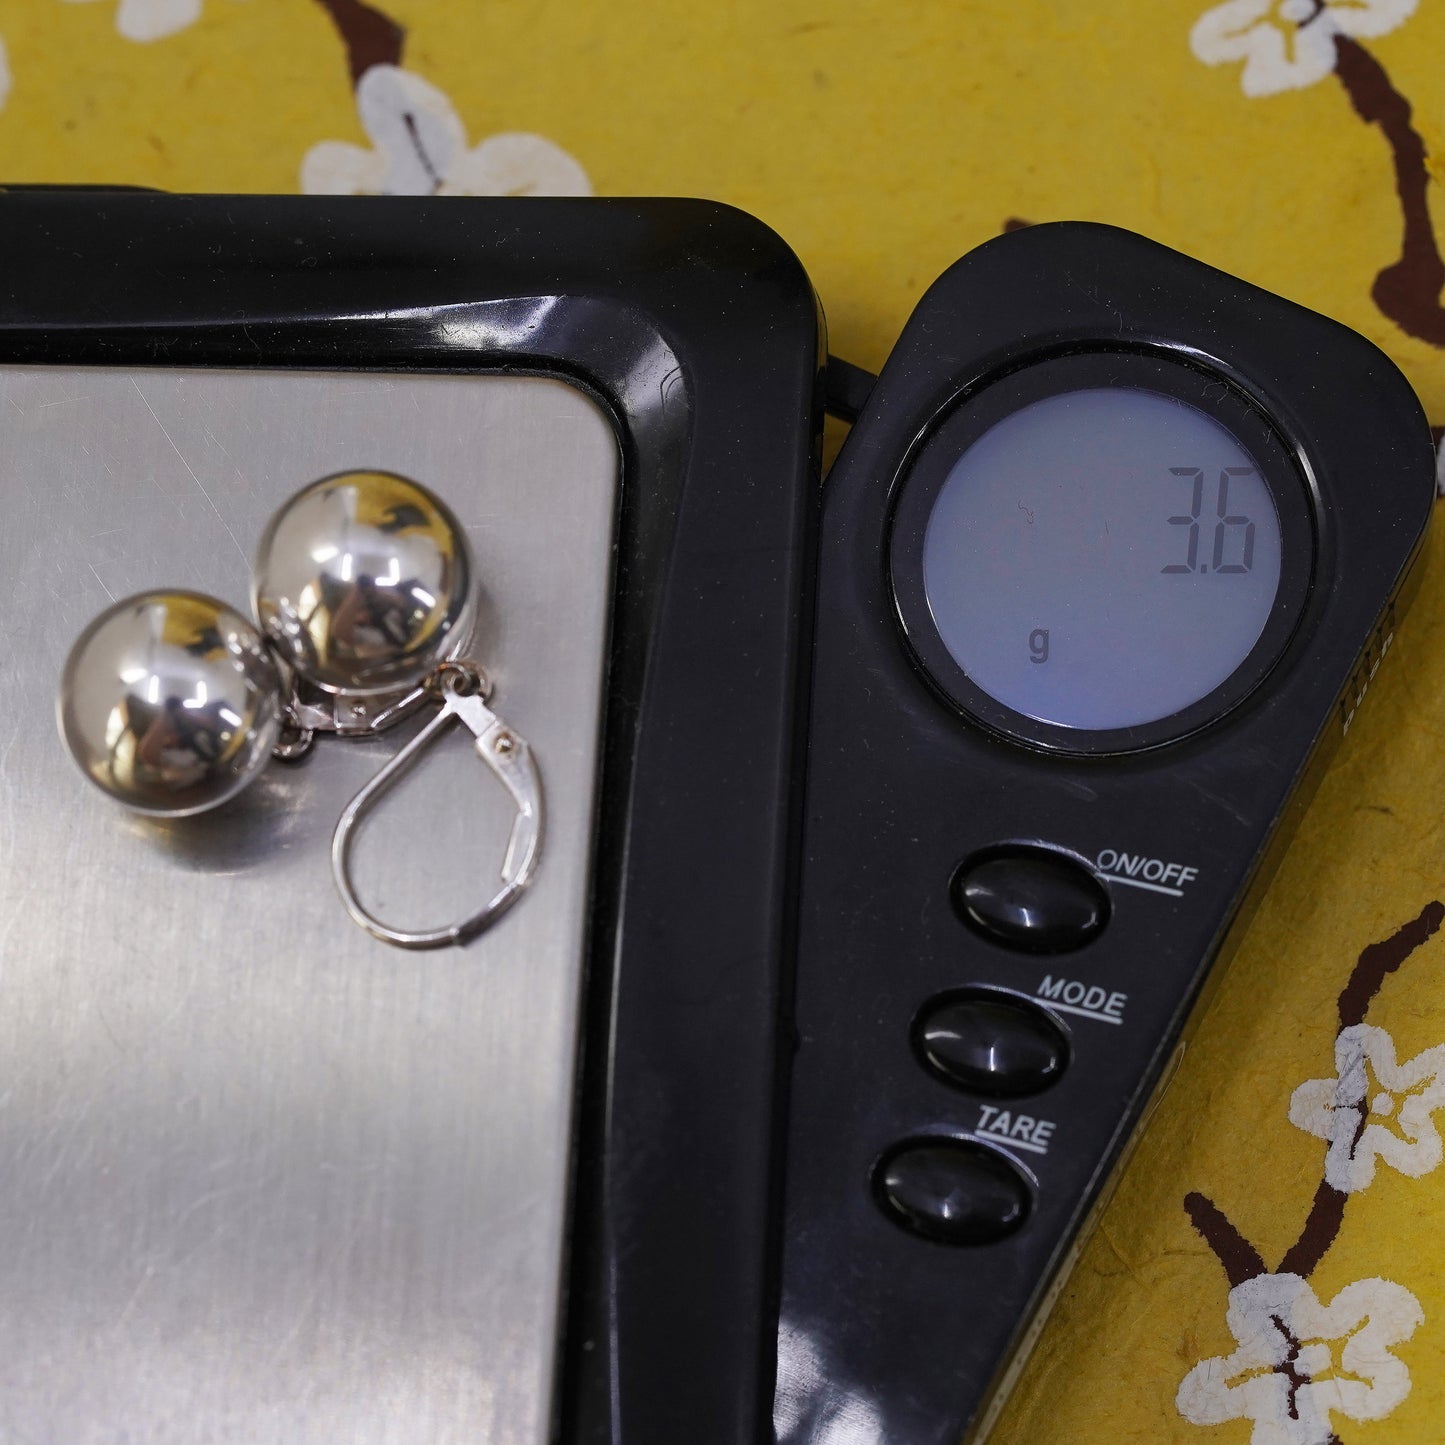 12mm, Vintage Sterling silver handmade earrings, 925 beads drops